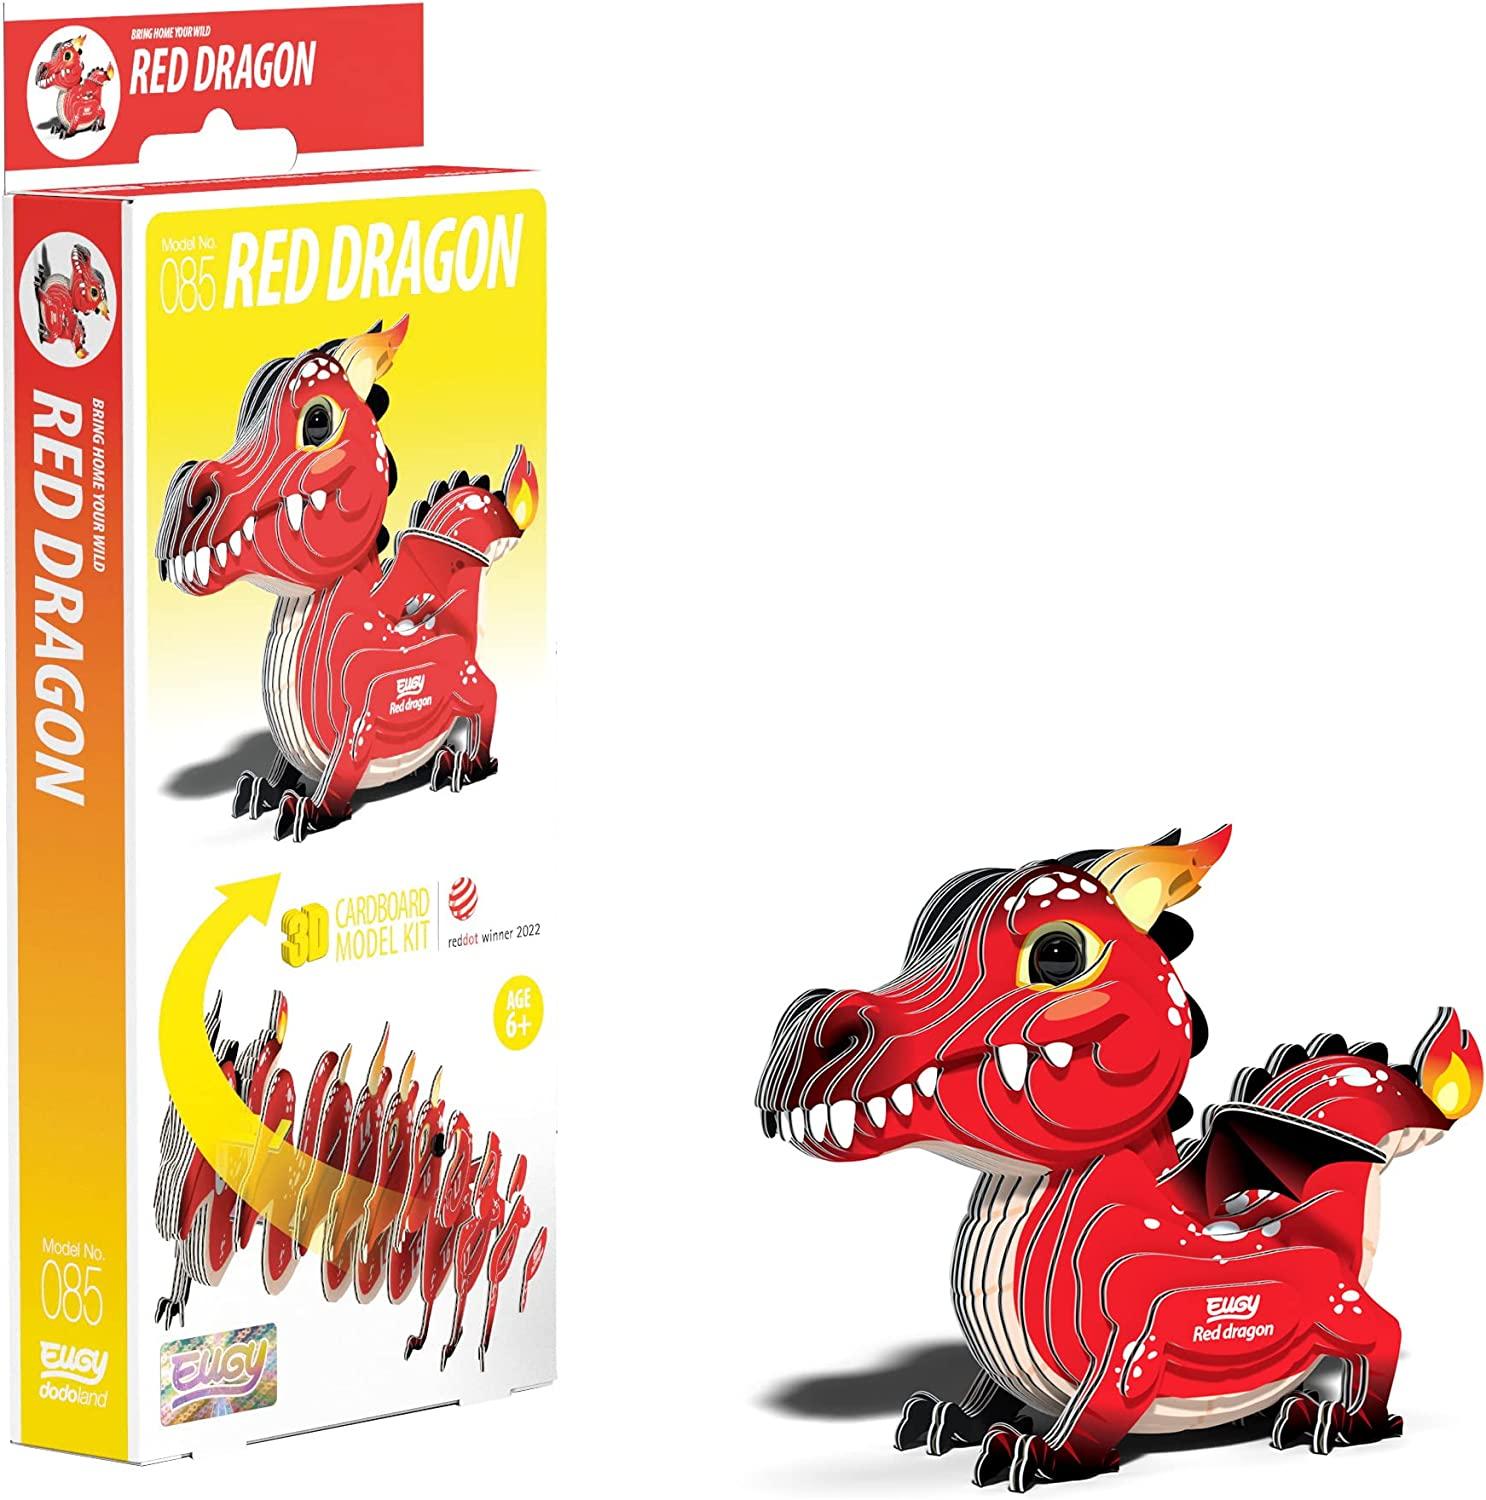 EUGY Red Dragon Craft Kit